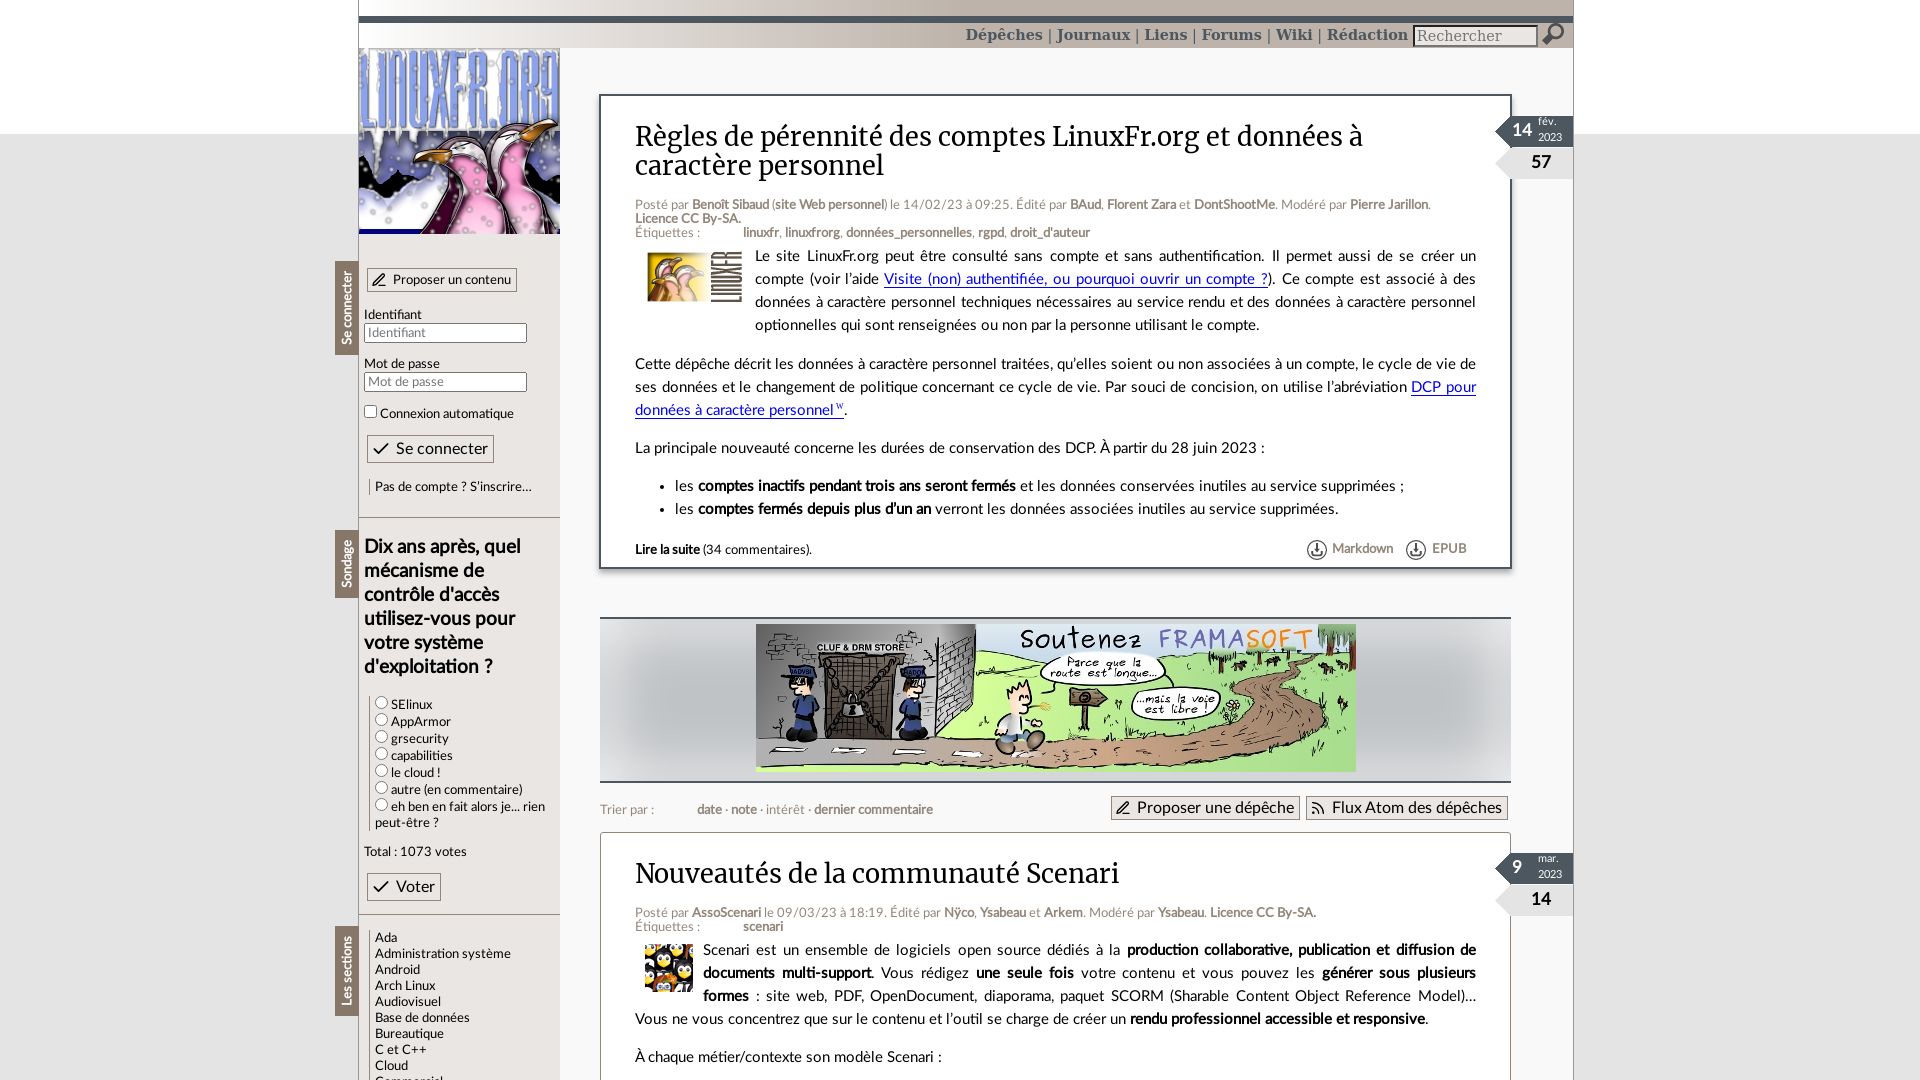 вебсайт linuxfr.org Є   ONLINE